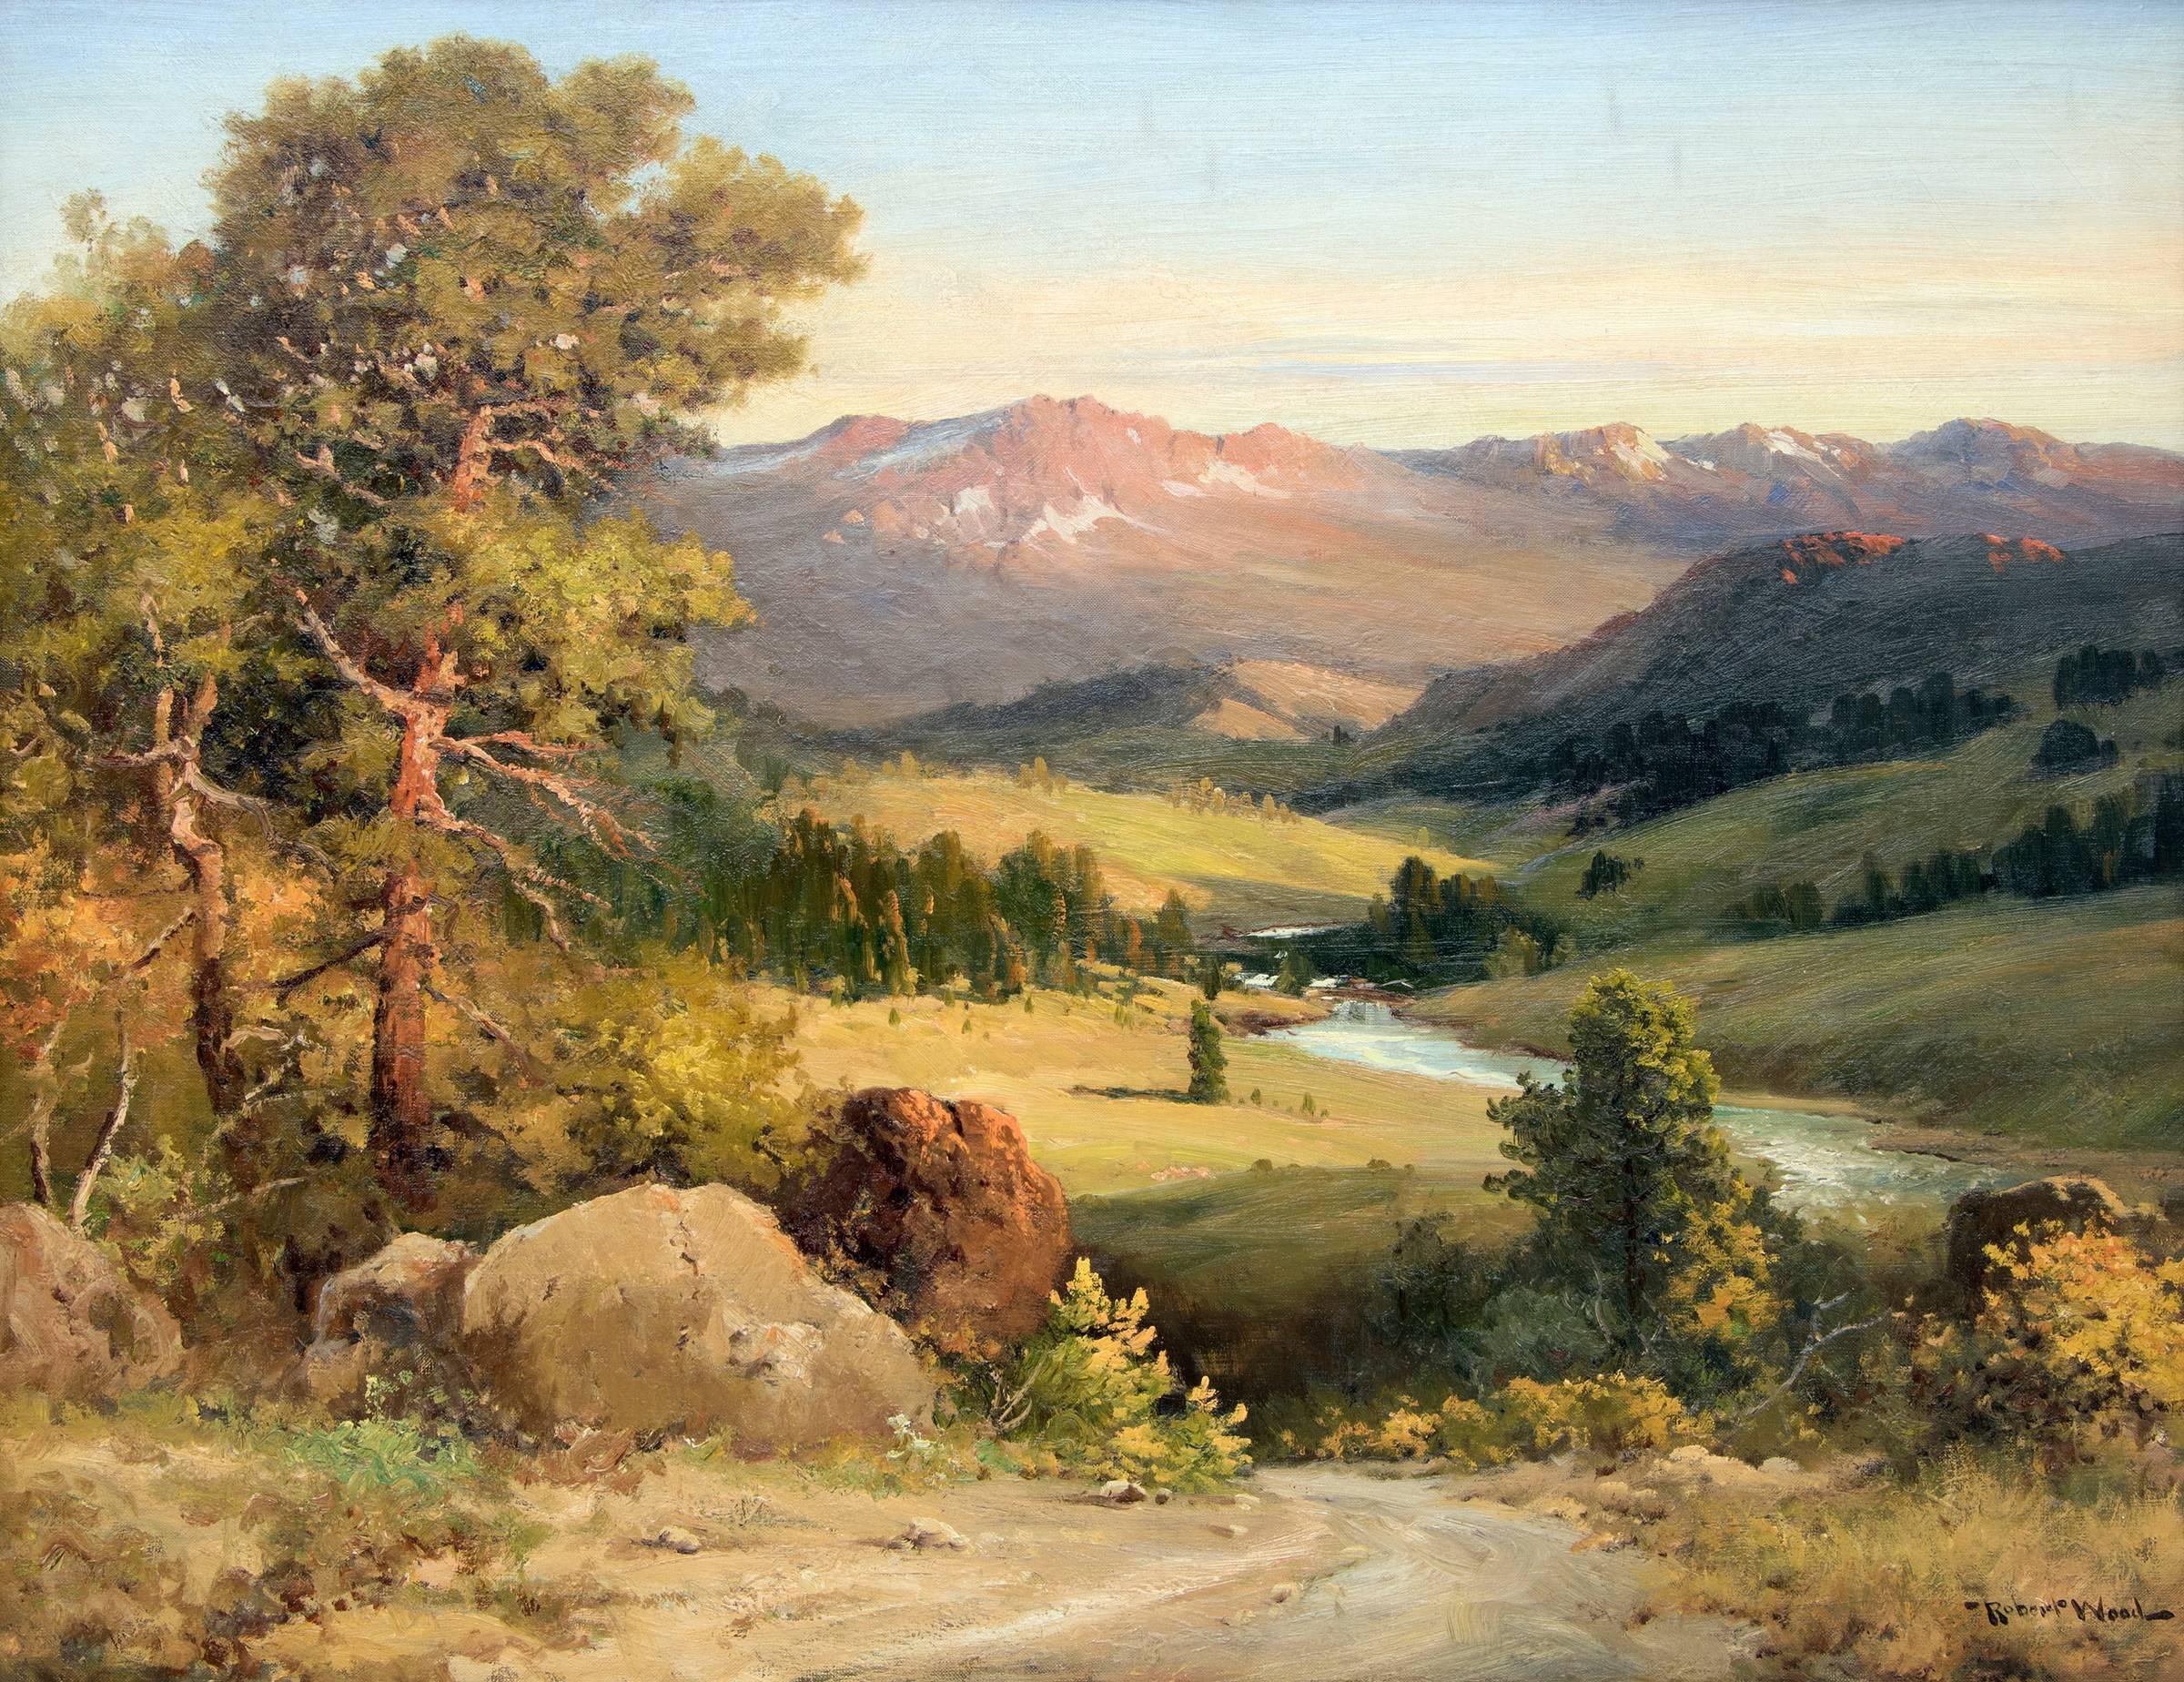 Robert William Wood Landscape Painting - Estes Park, Colorado (Rocky Mountain National Park Landscape)